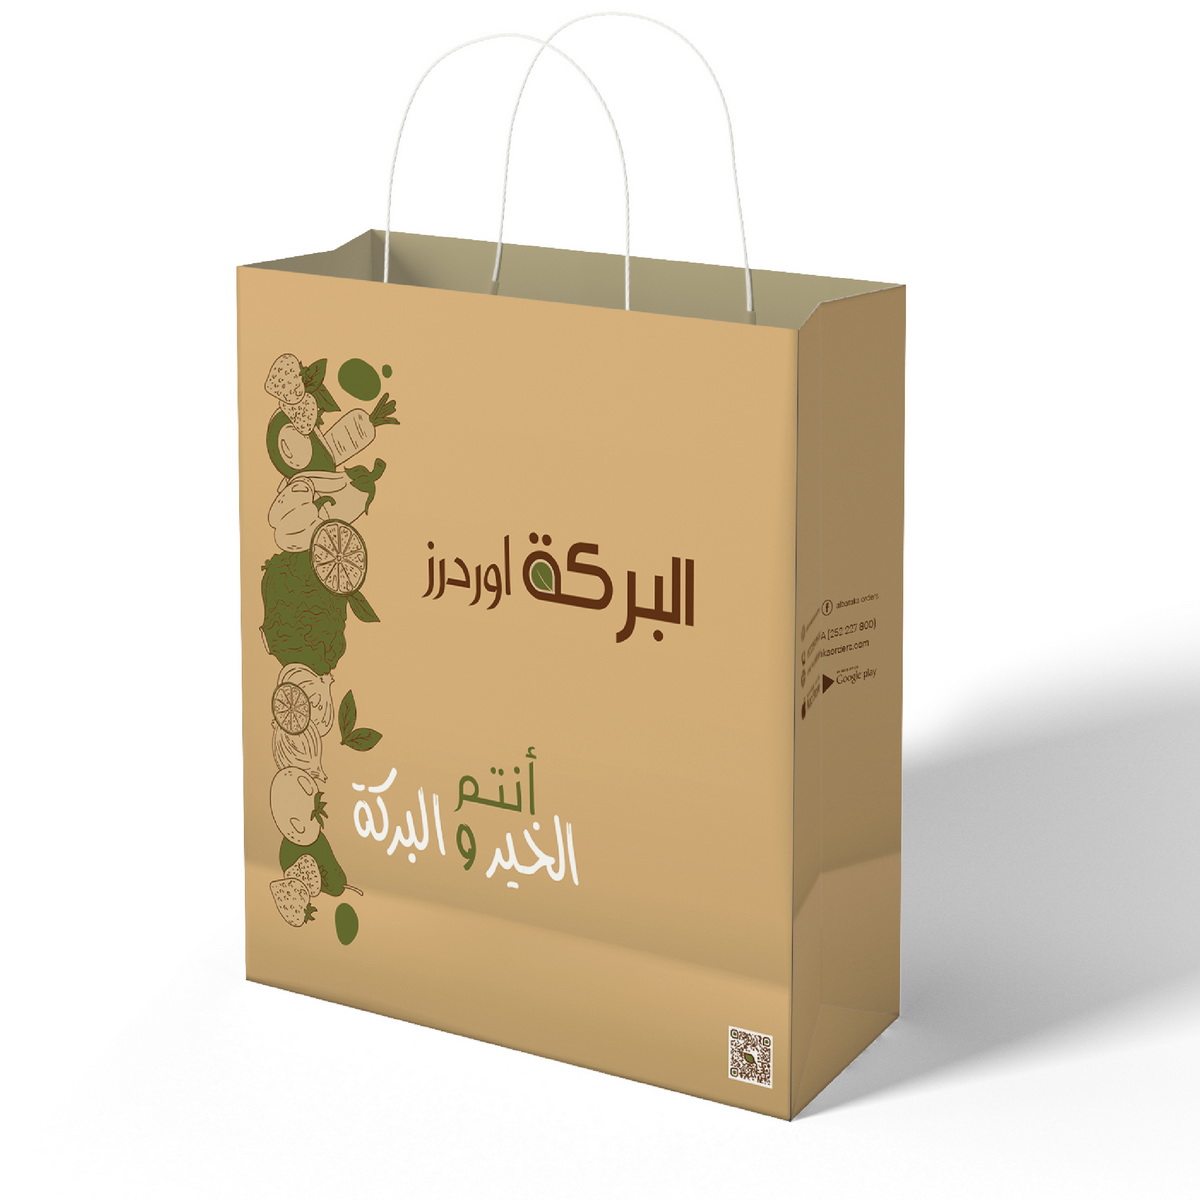 bag deliver designs al baraka orders abu dhabi